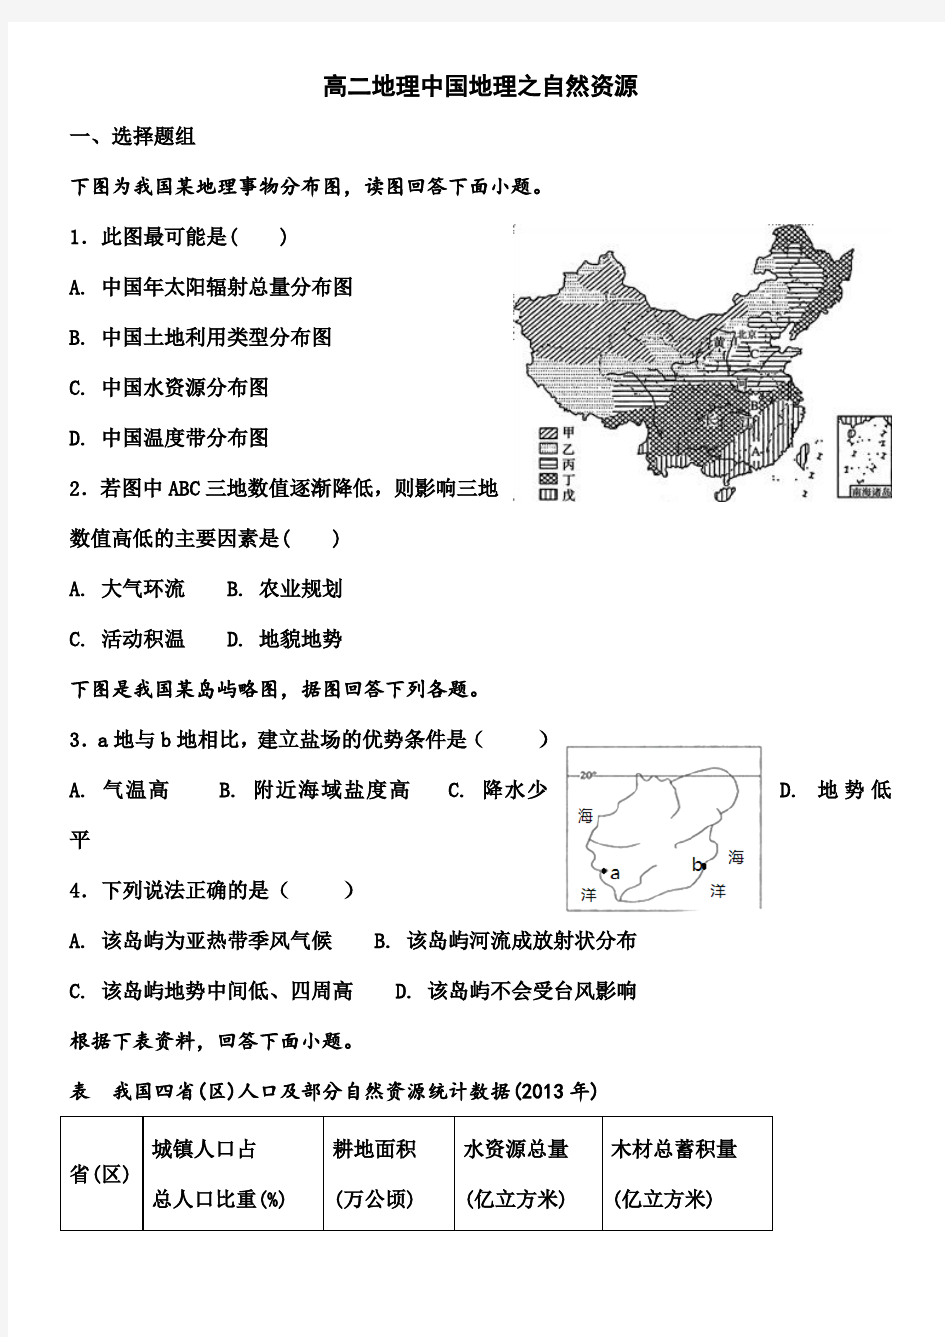 高二区域地理中国地理的自然资源测试题 (1)